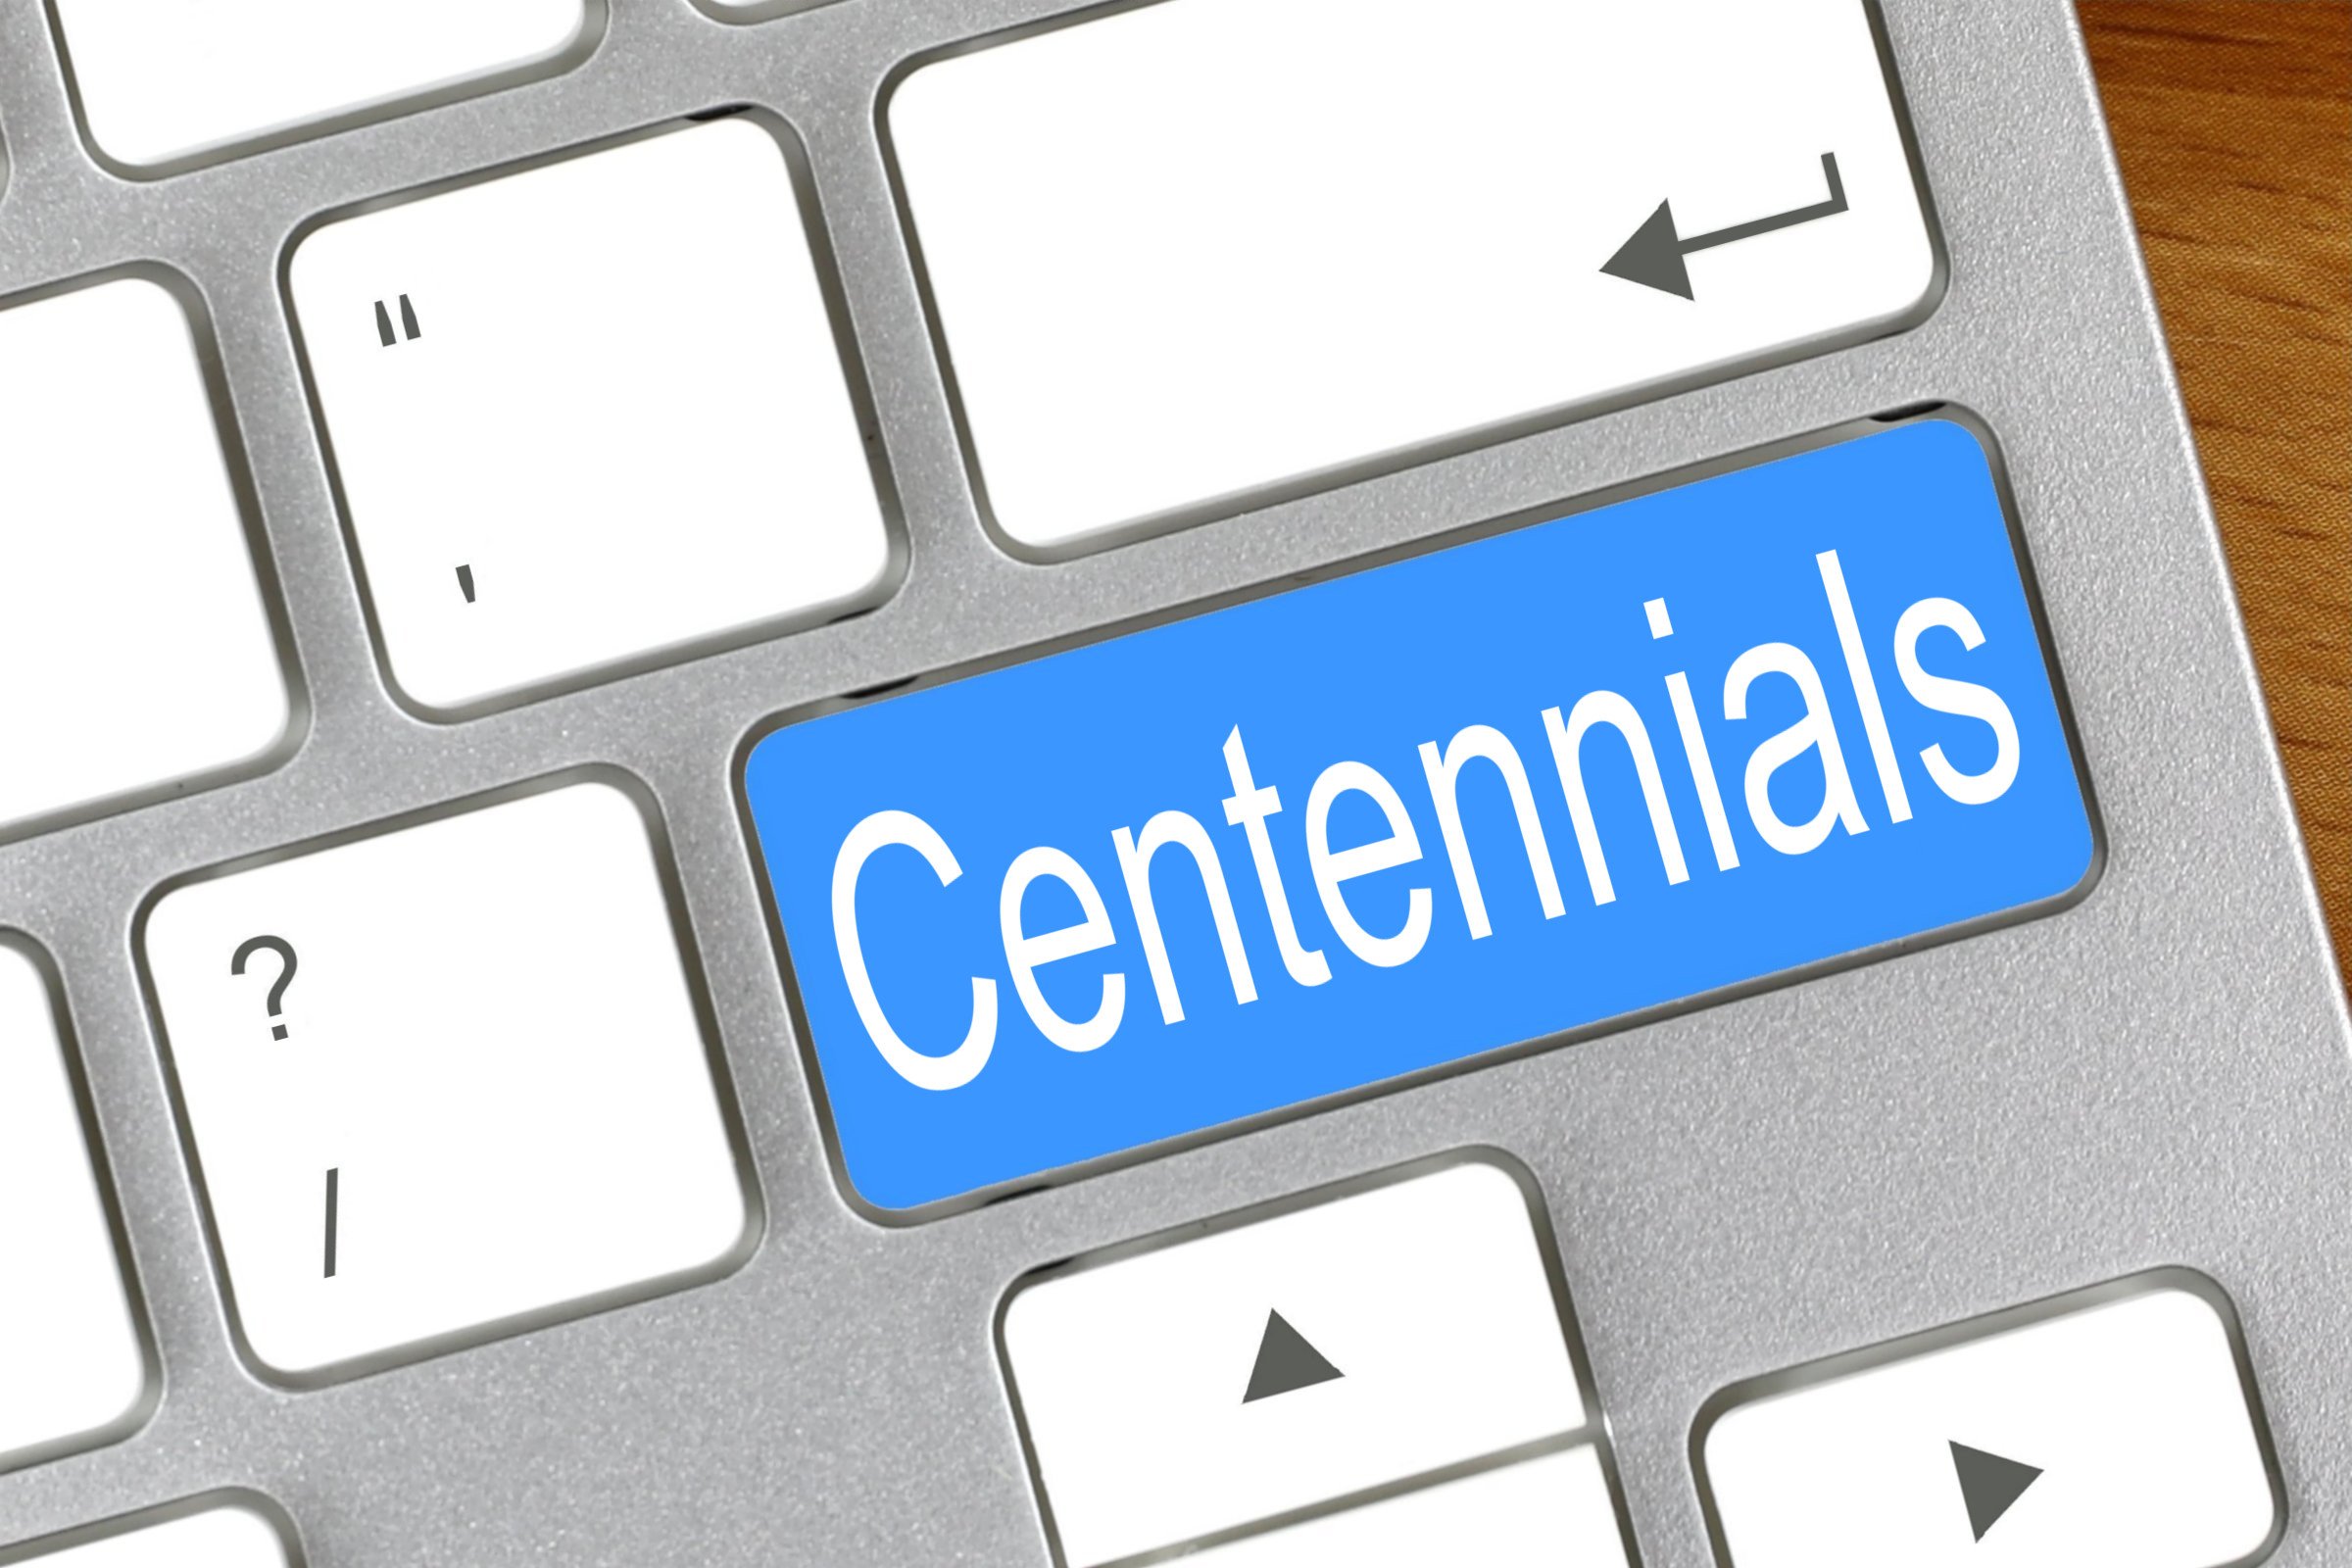 centennials